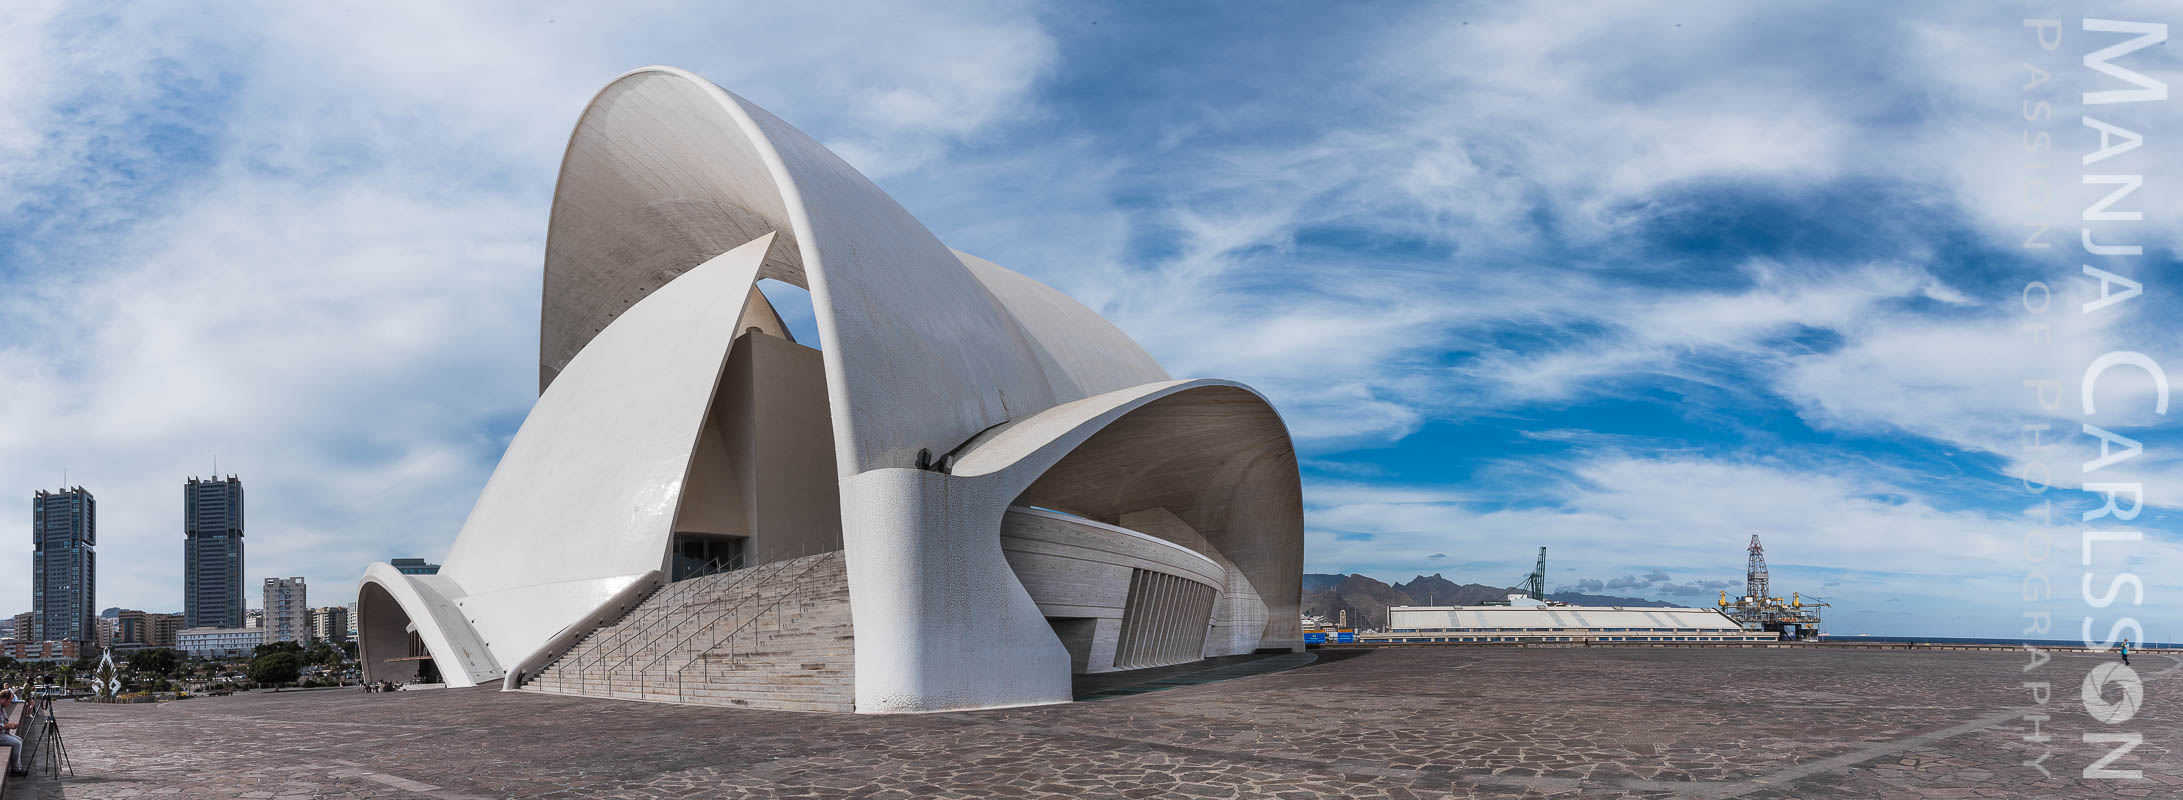 Auditorium Santa Cruz / Tenerife (Panorama) mit Blick auf die Stadt - architektonische Highlight auf Teneriffa